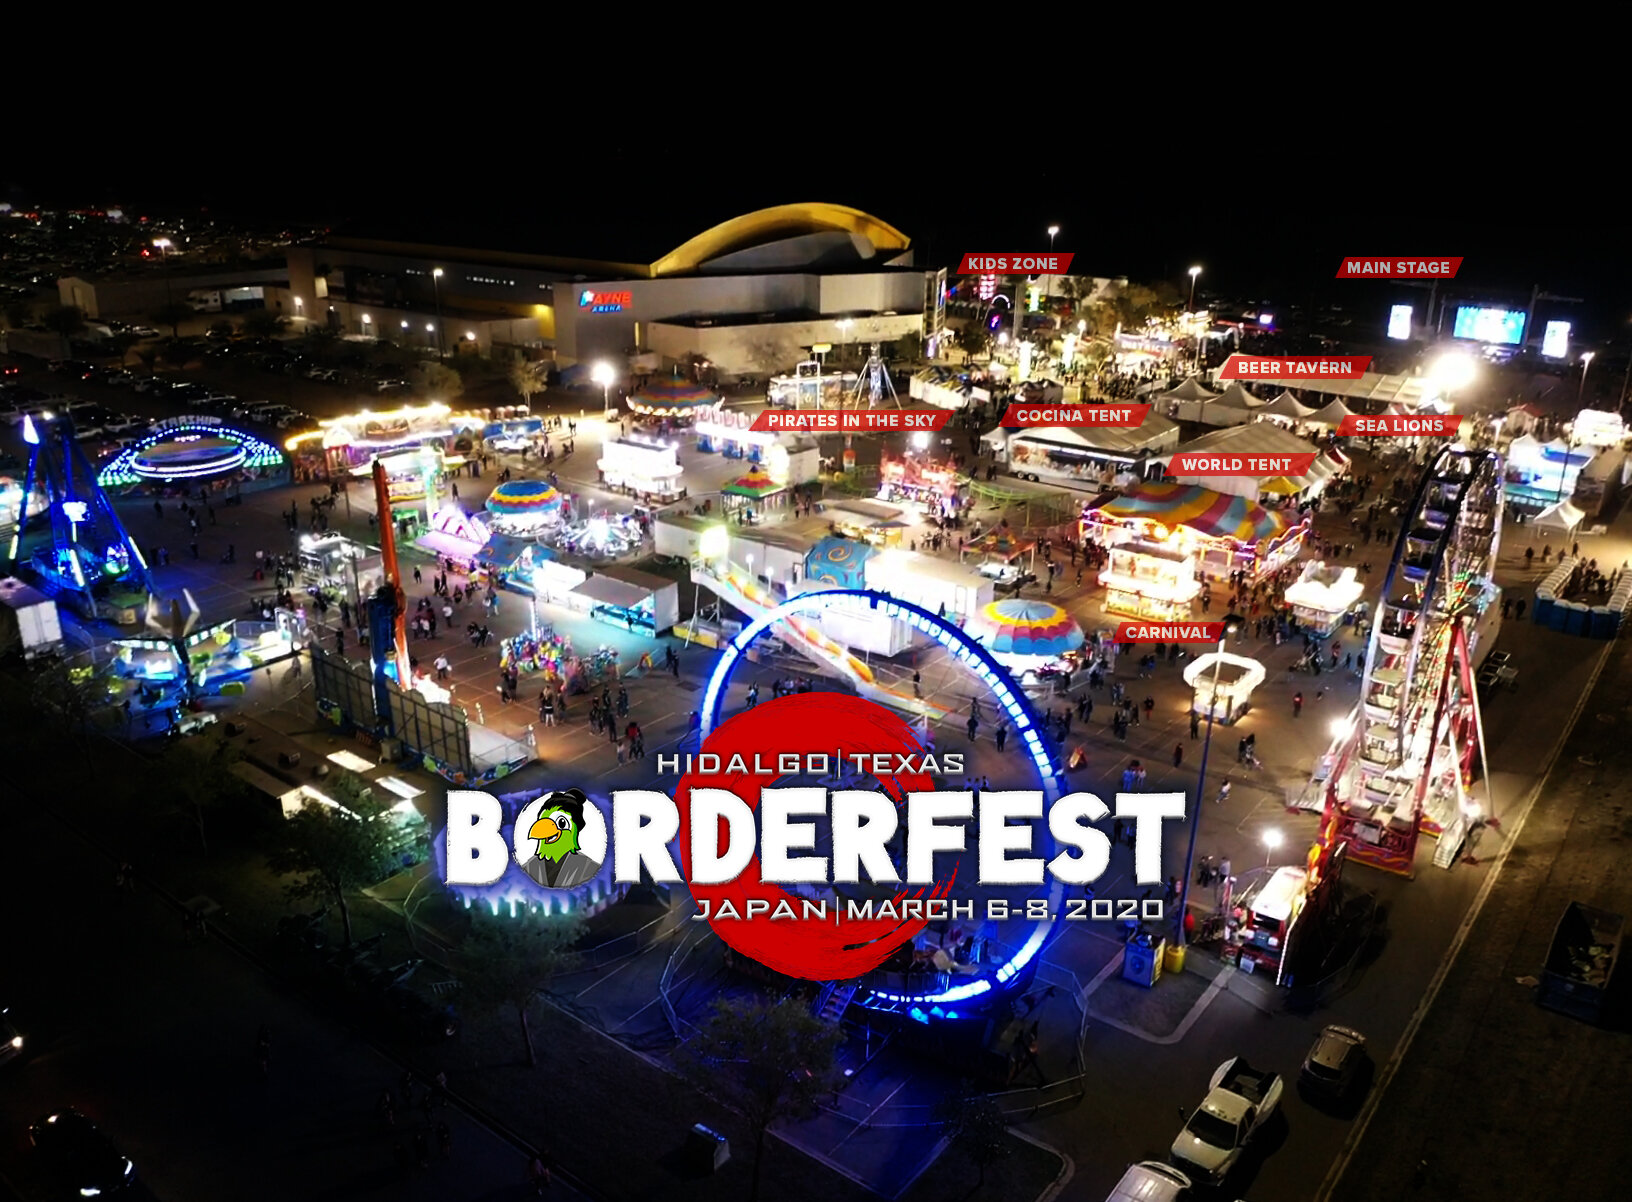 Borderfest Gallery — City of Hidalgo